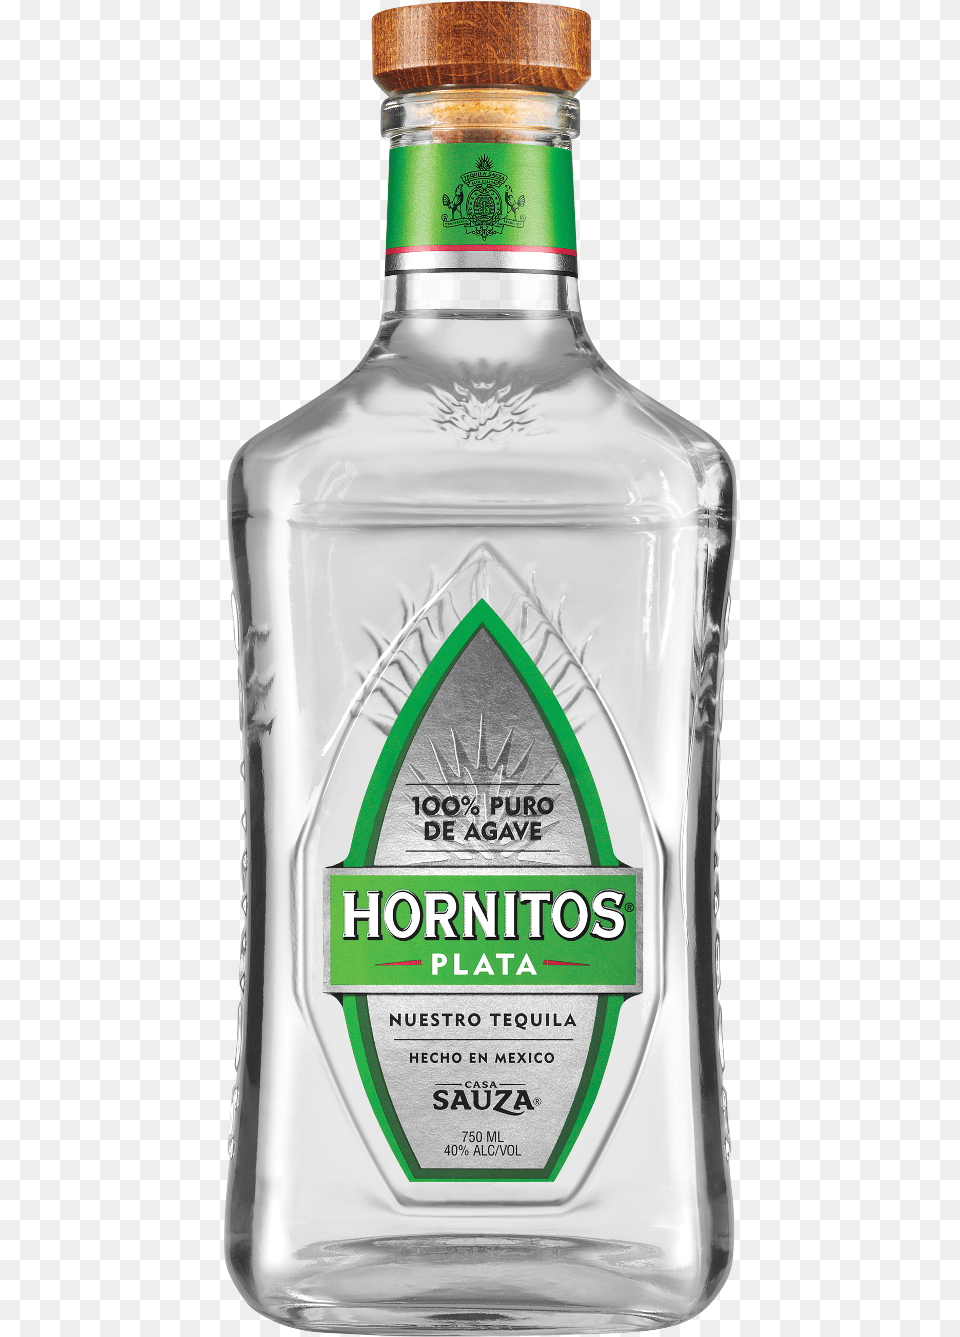 Sauza Hornitos Plata Sauza Hornitos Plata Tequila, Alcohol, Beverage, Liquor, Bottle Free Png Download